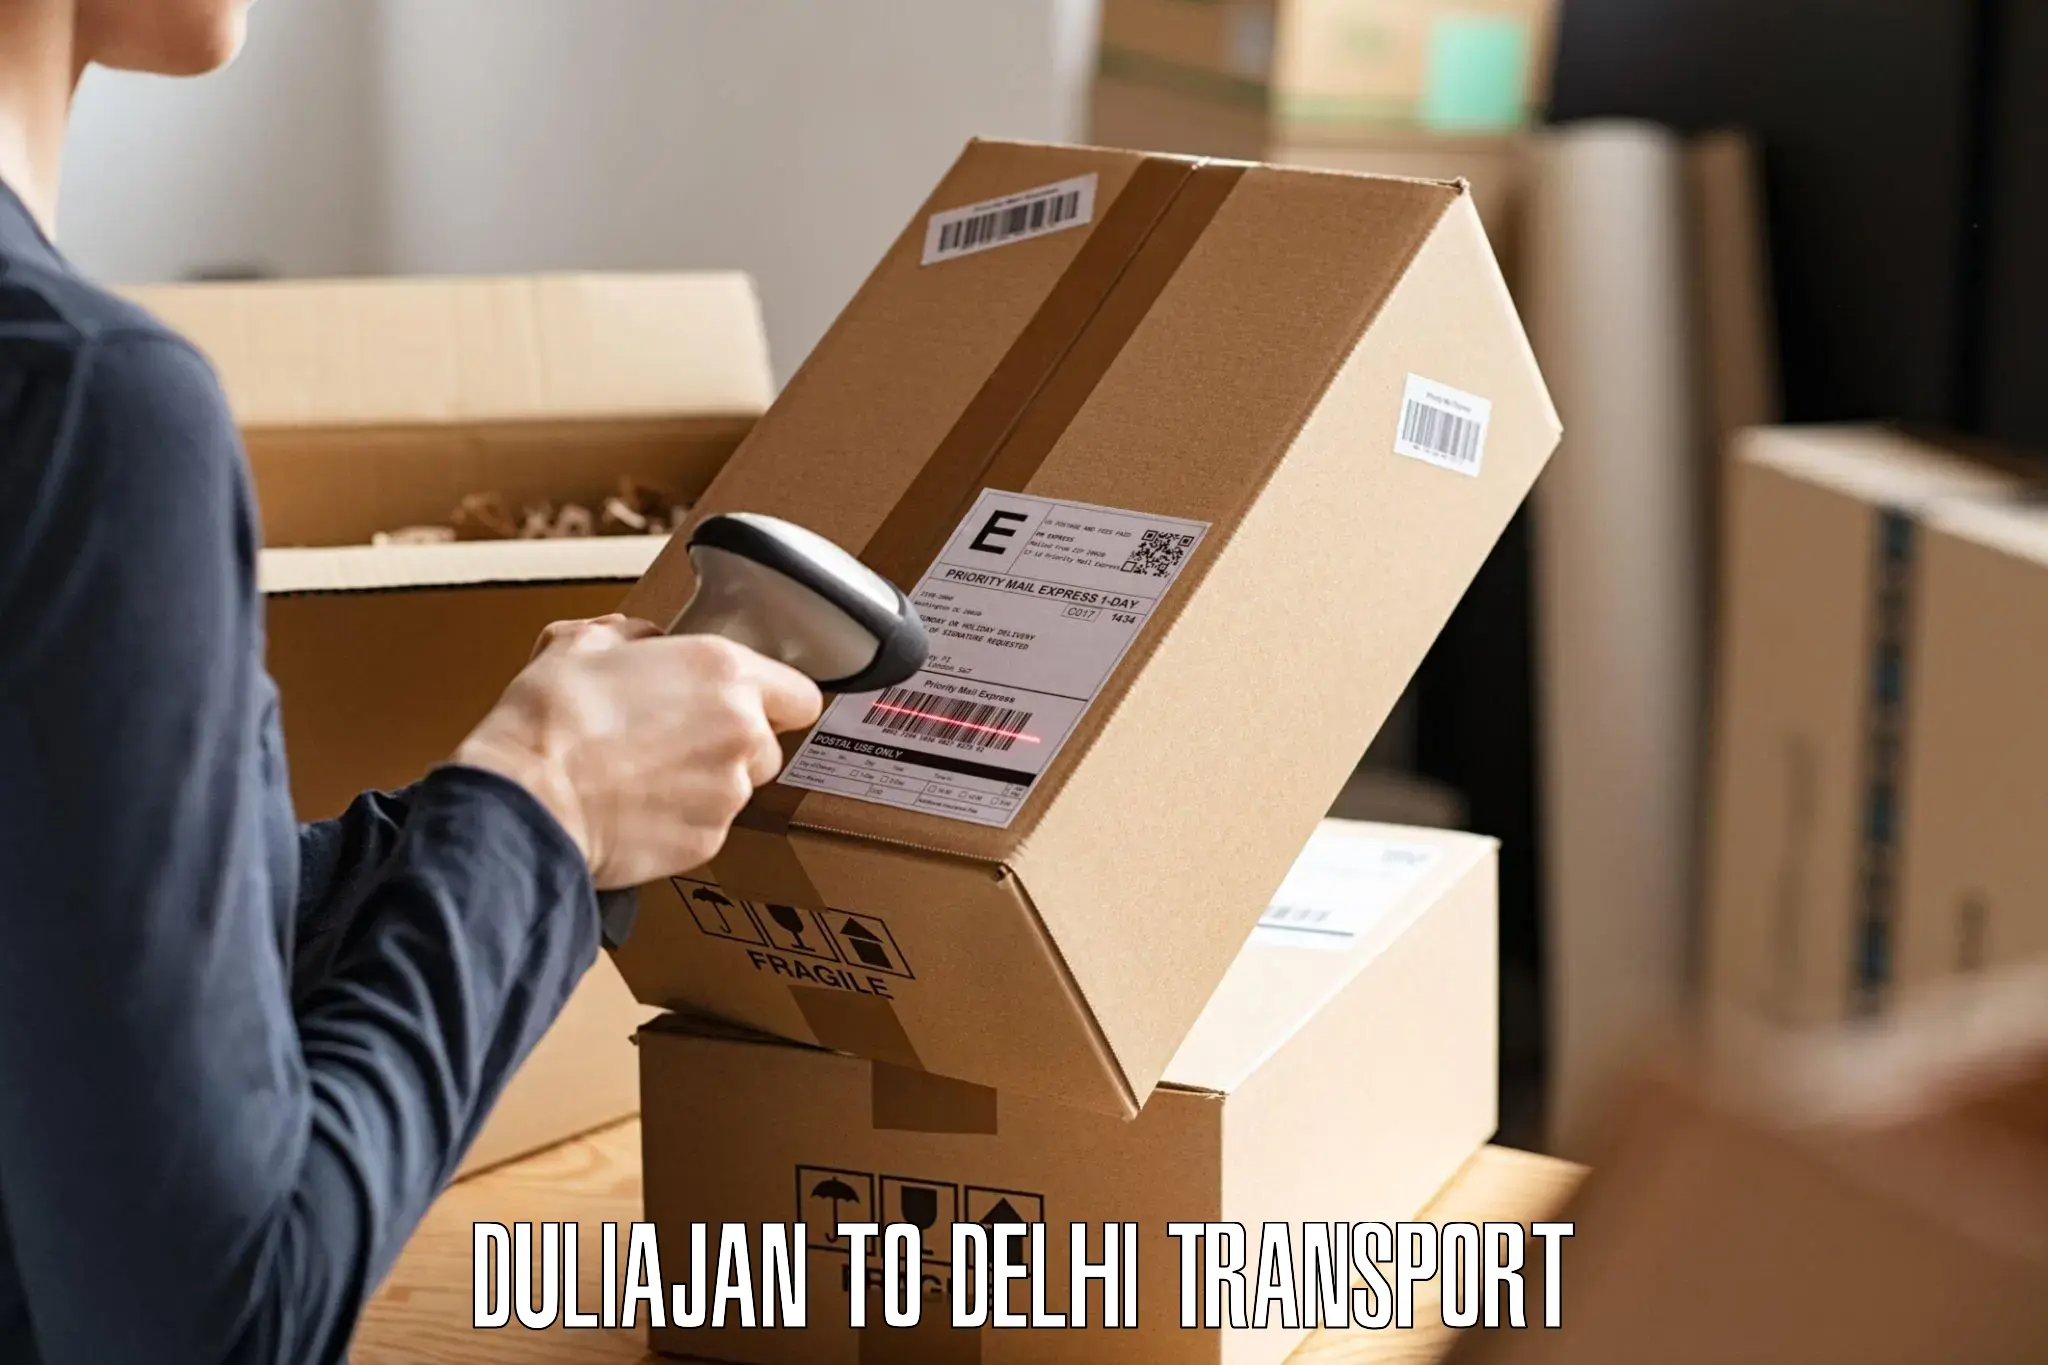 Interstate transport services Duliajan to Delhi